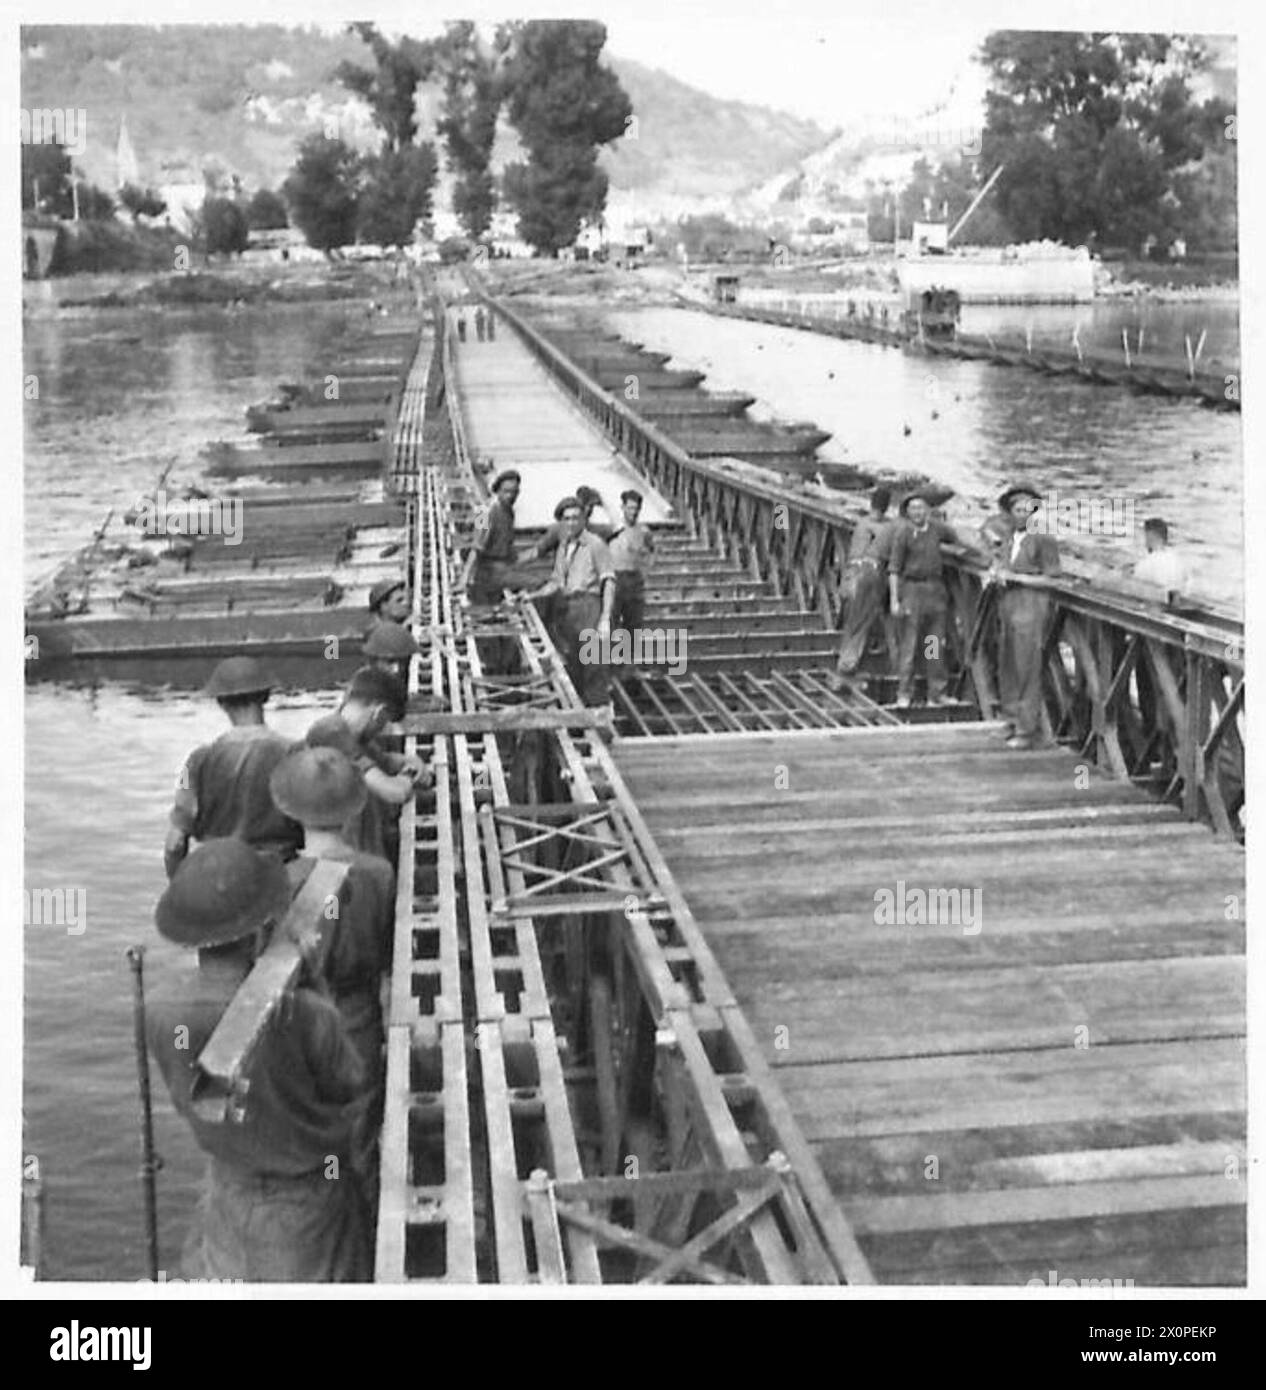 CRUZANDO LOS PUENTES DEL SENA - El puente de tráfico pesado Clase 40 está a punto de completarse. Negativo fotográfico, Ejército Británico, 21er Grupo del Ejército Foto de stock